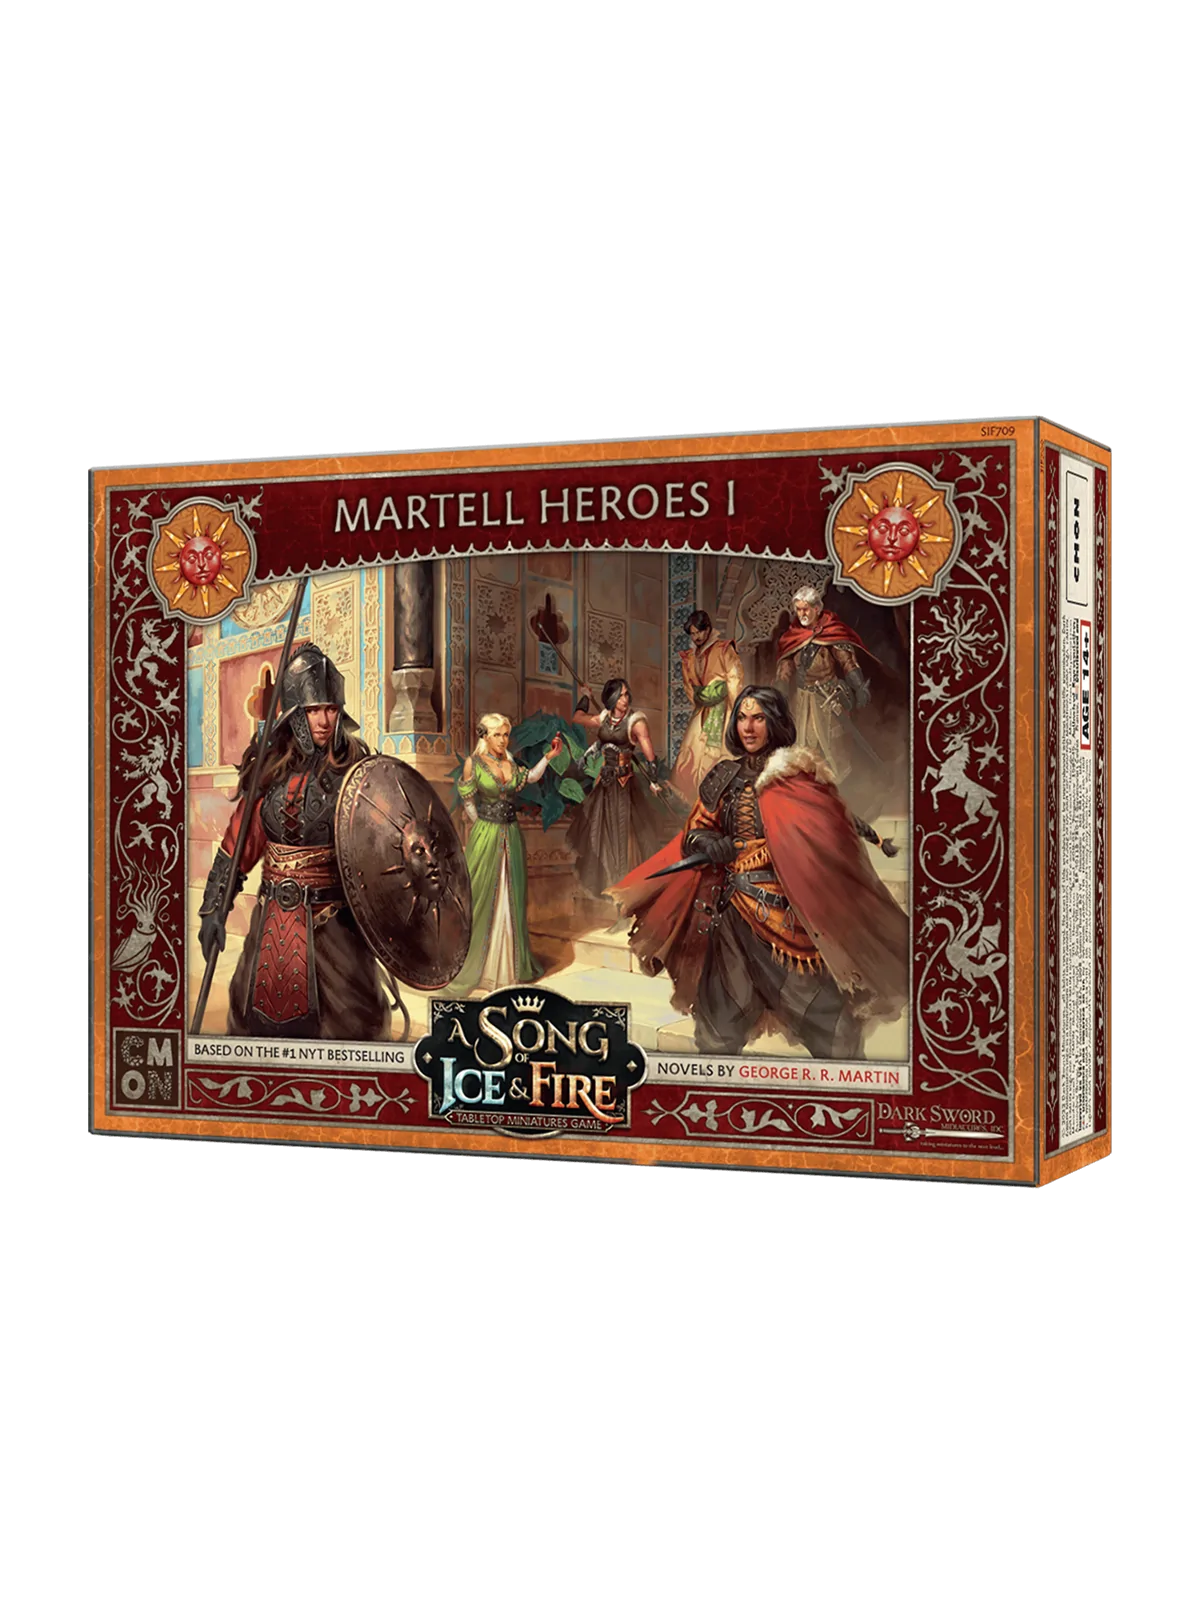 Comprar Canción de Hielo y Fuego: Héroes Martell I barato al mejor pre